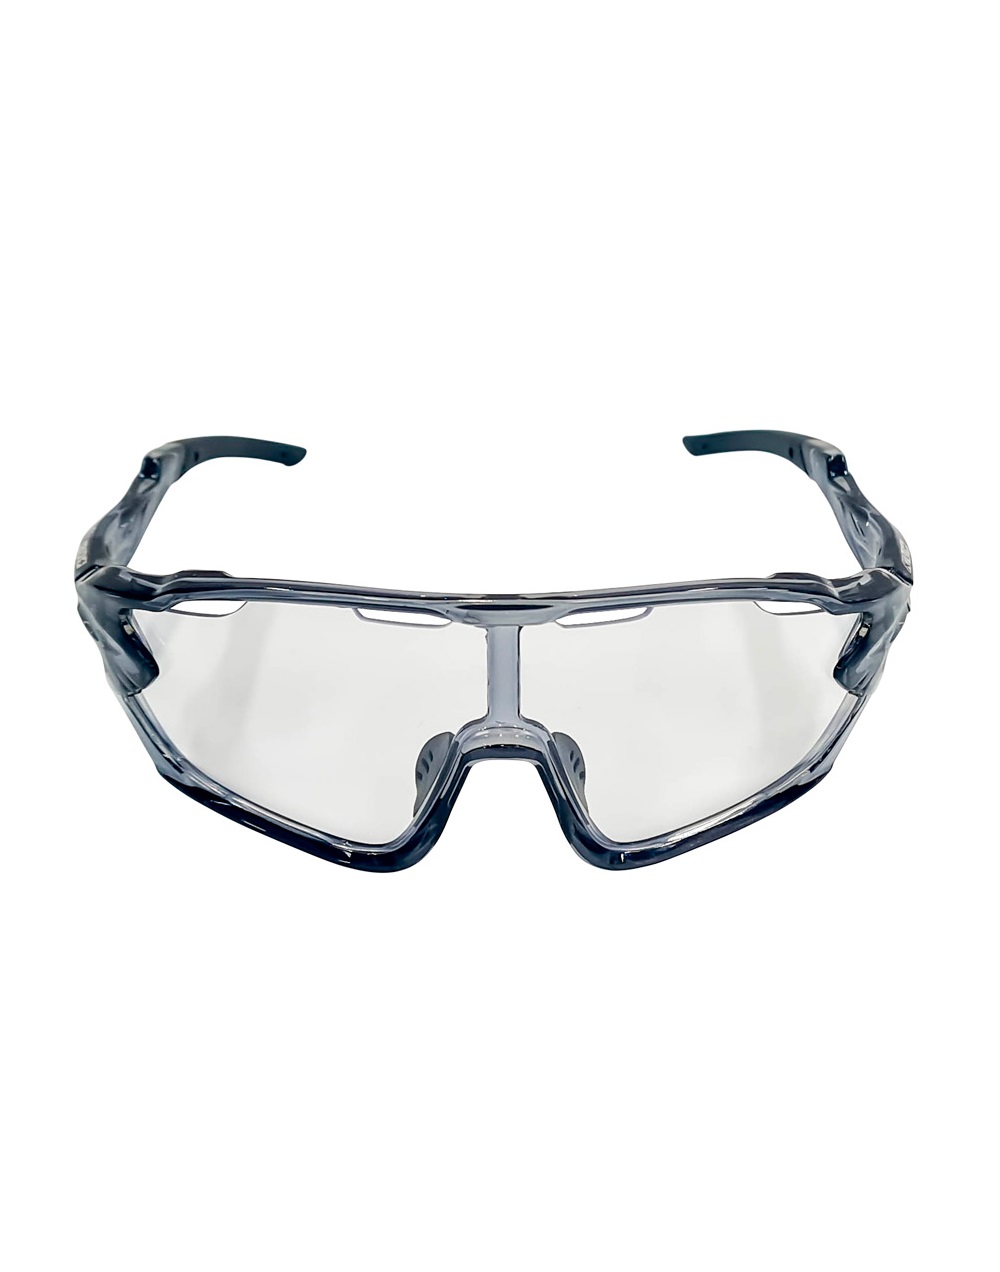 Спортивные солнцезащитные очки унисекс KV+ Delta glasses прозрачные